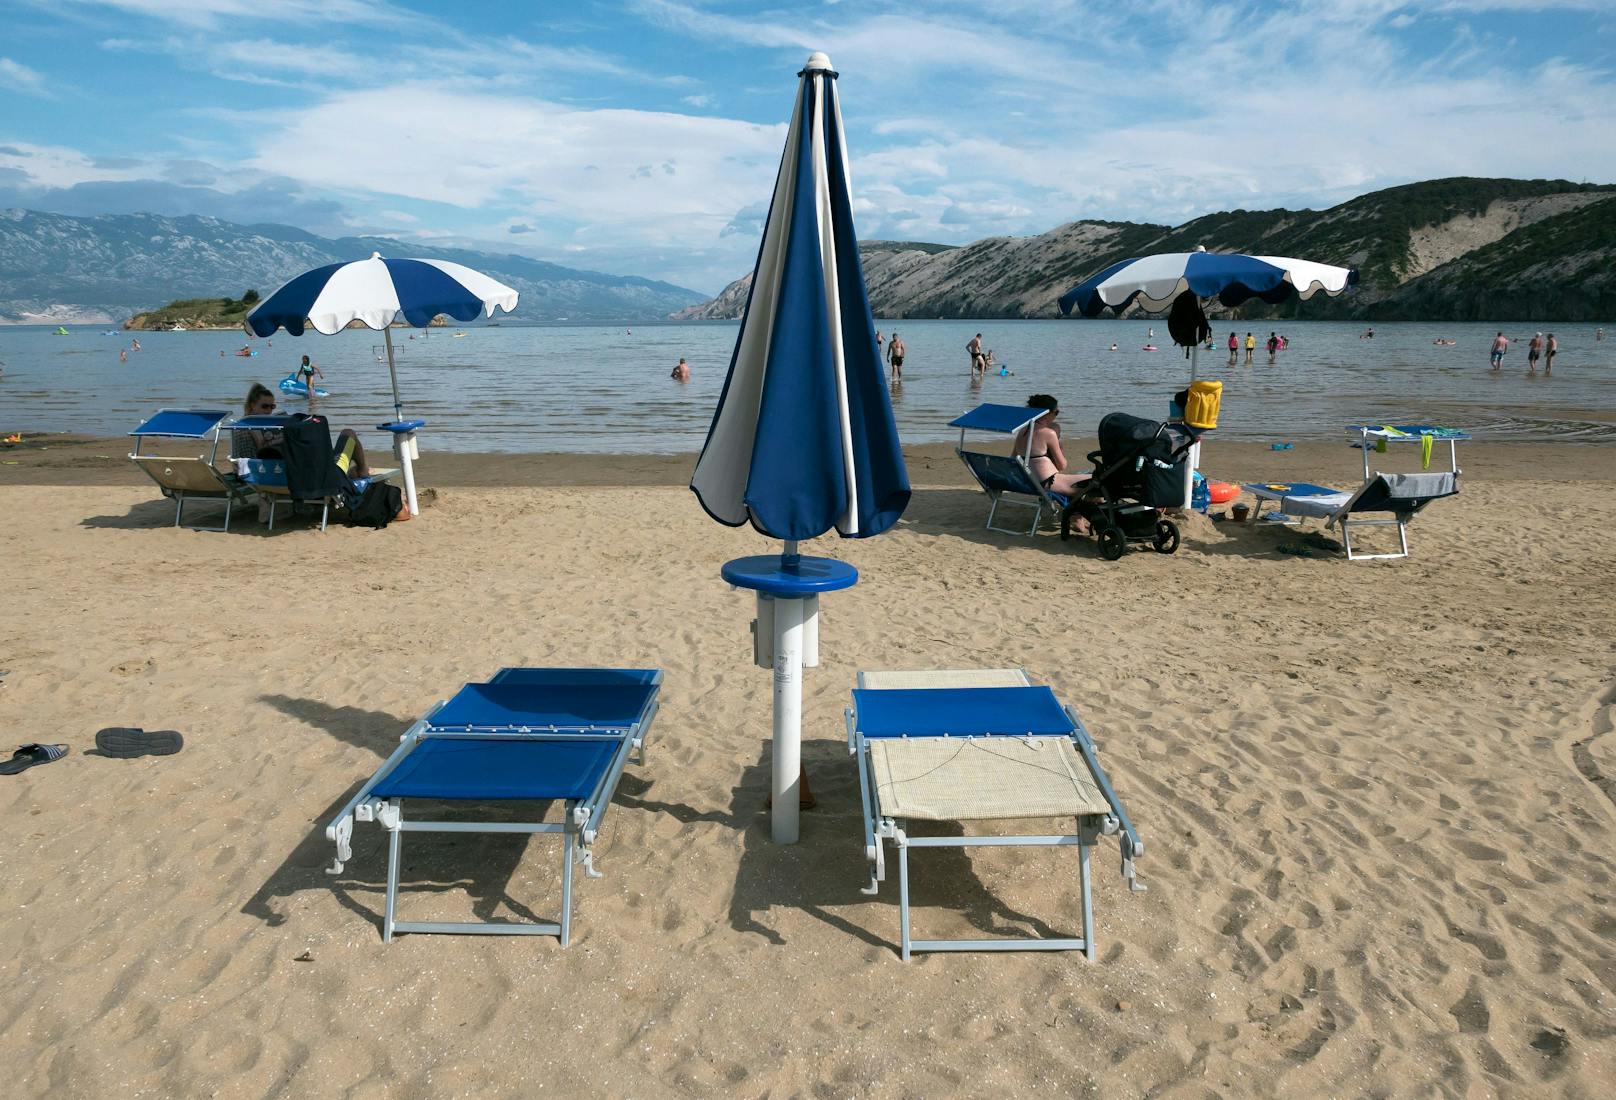 Im Bild: Ein leerer Strand in Kroatien (Rab).